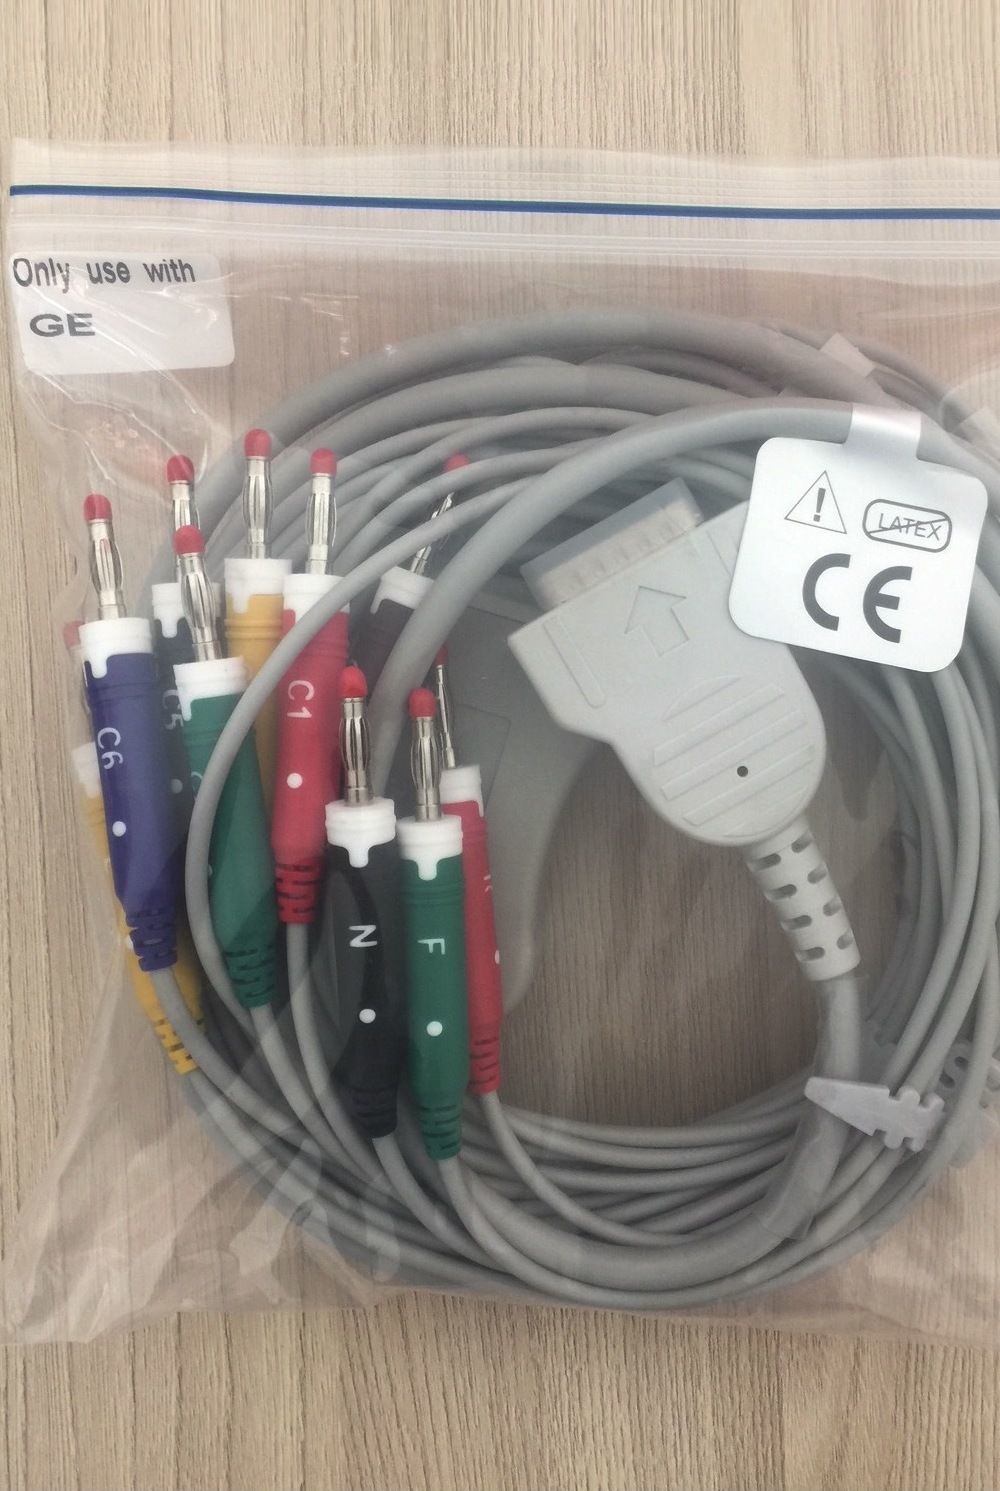 EKG Cable for  GE Mac1200st_สายหลีดอีเคจี เครื่อง GE Mac1200st